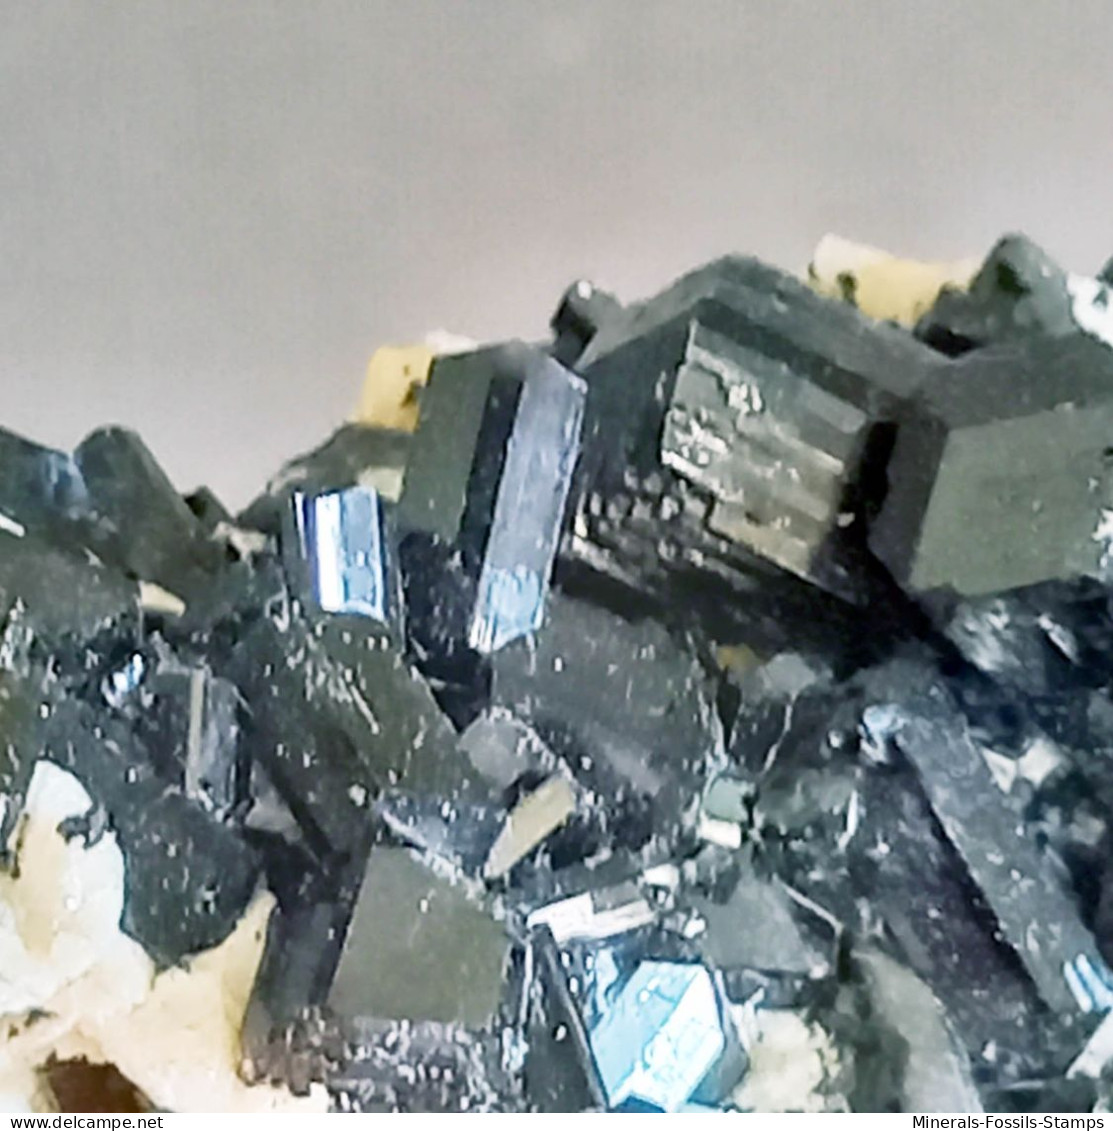 #Q48 Splendidi cristalli di TORMALINA var. SCHORLITE (Erongo, Namibia)